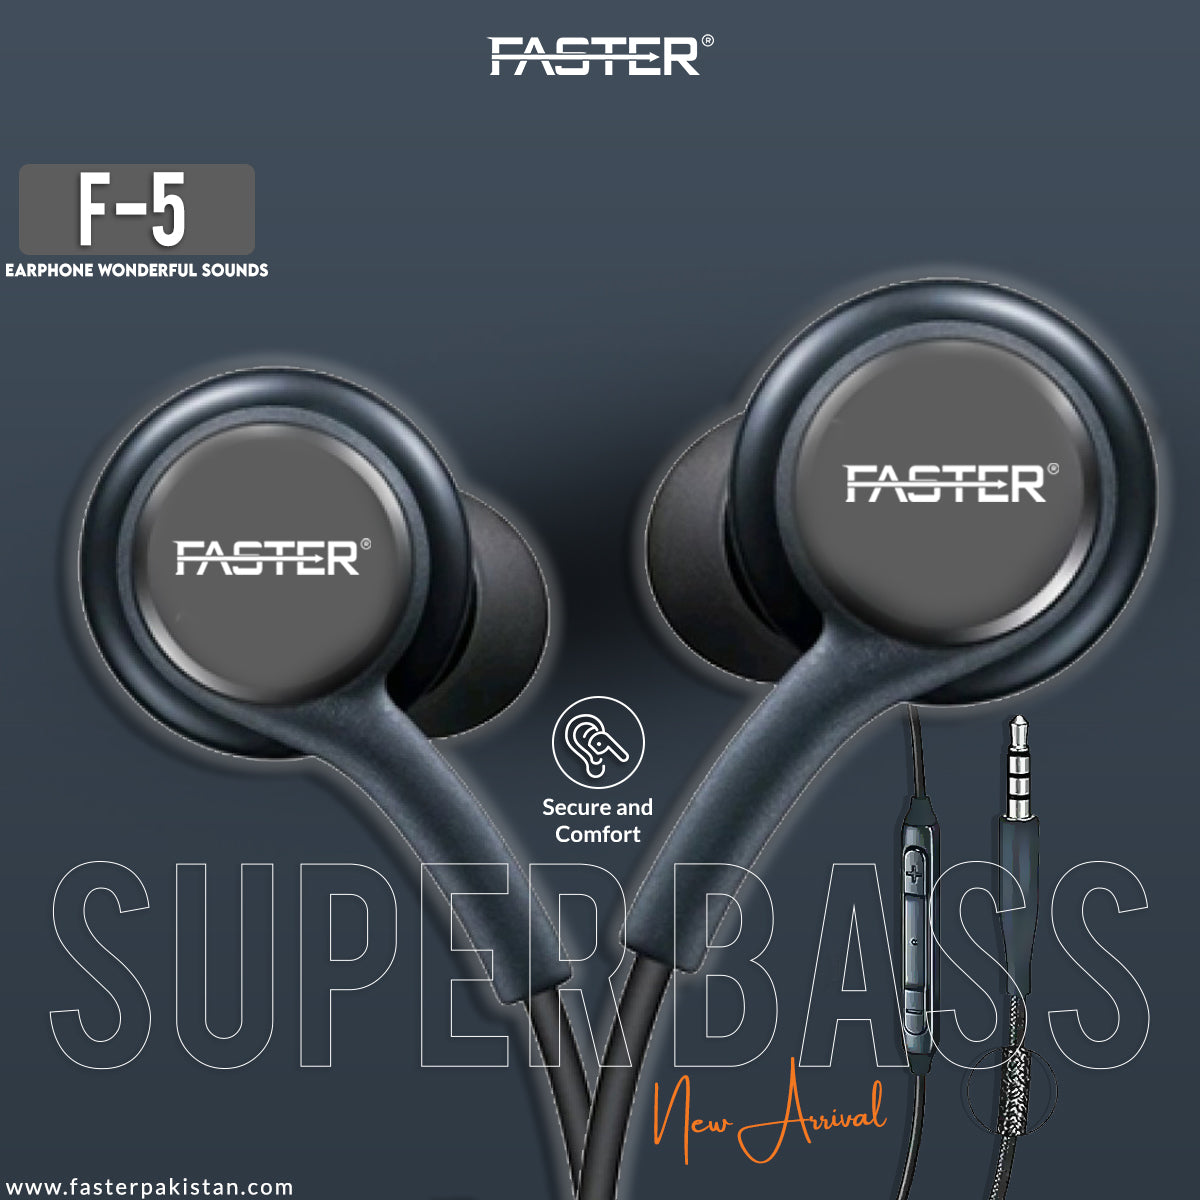 Powerful Bass, Premium Sound: FASTER F5 Super Bass Earphones